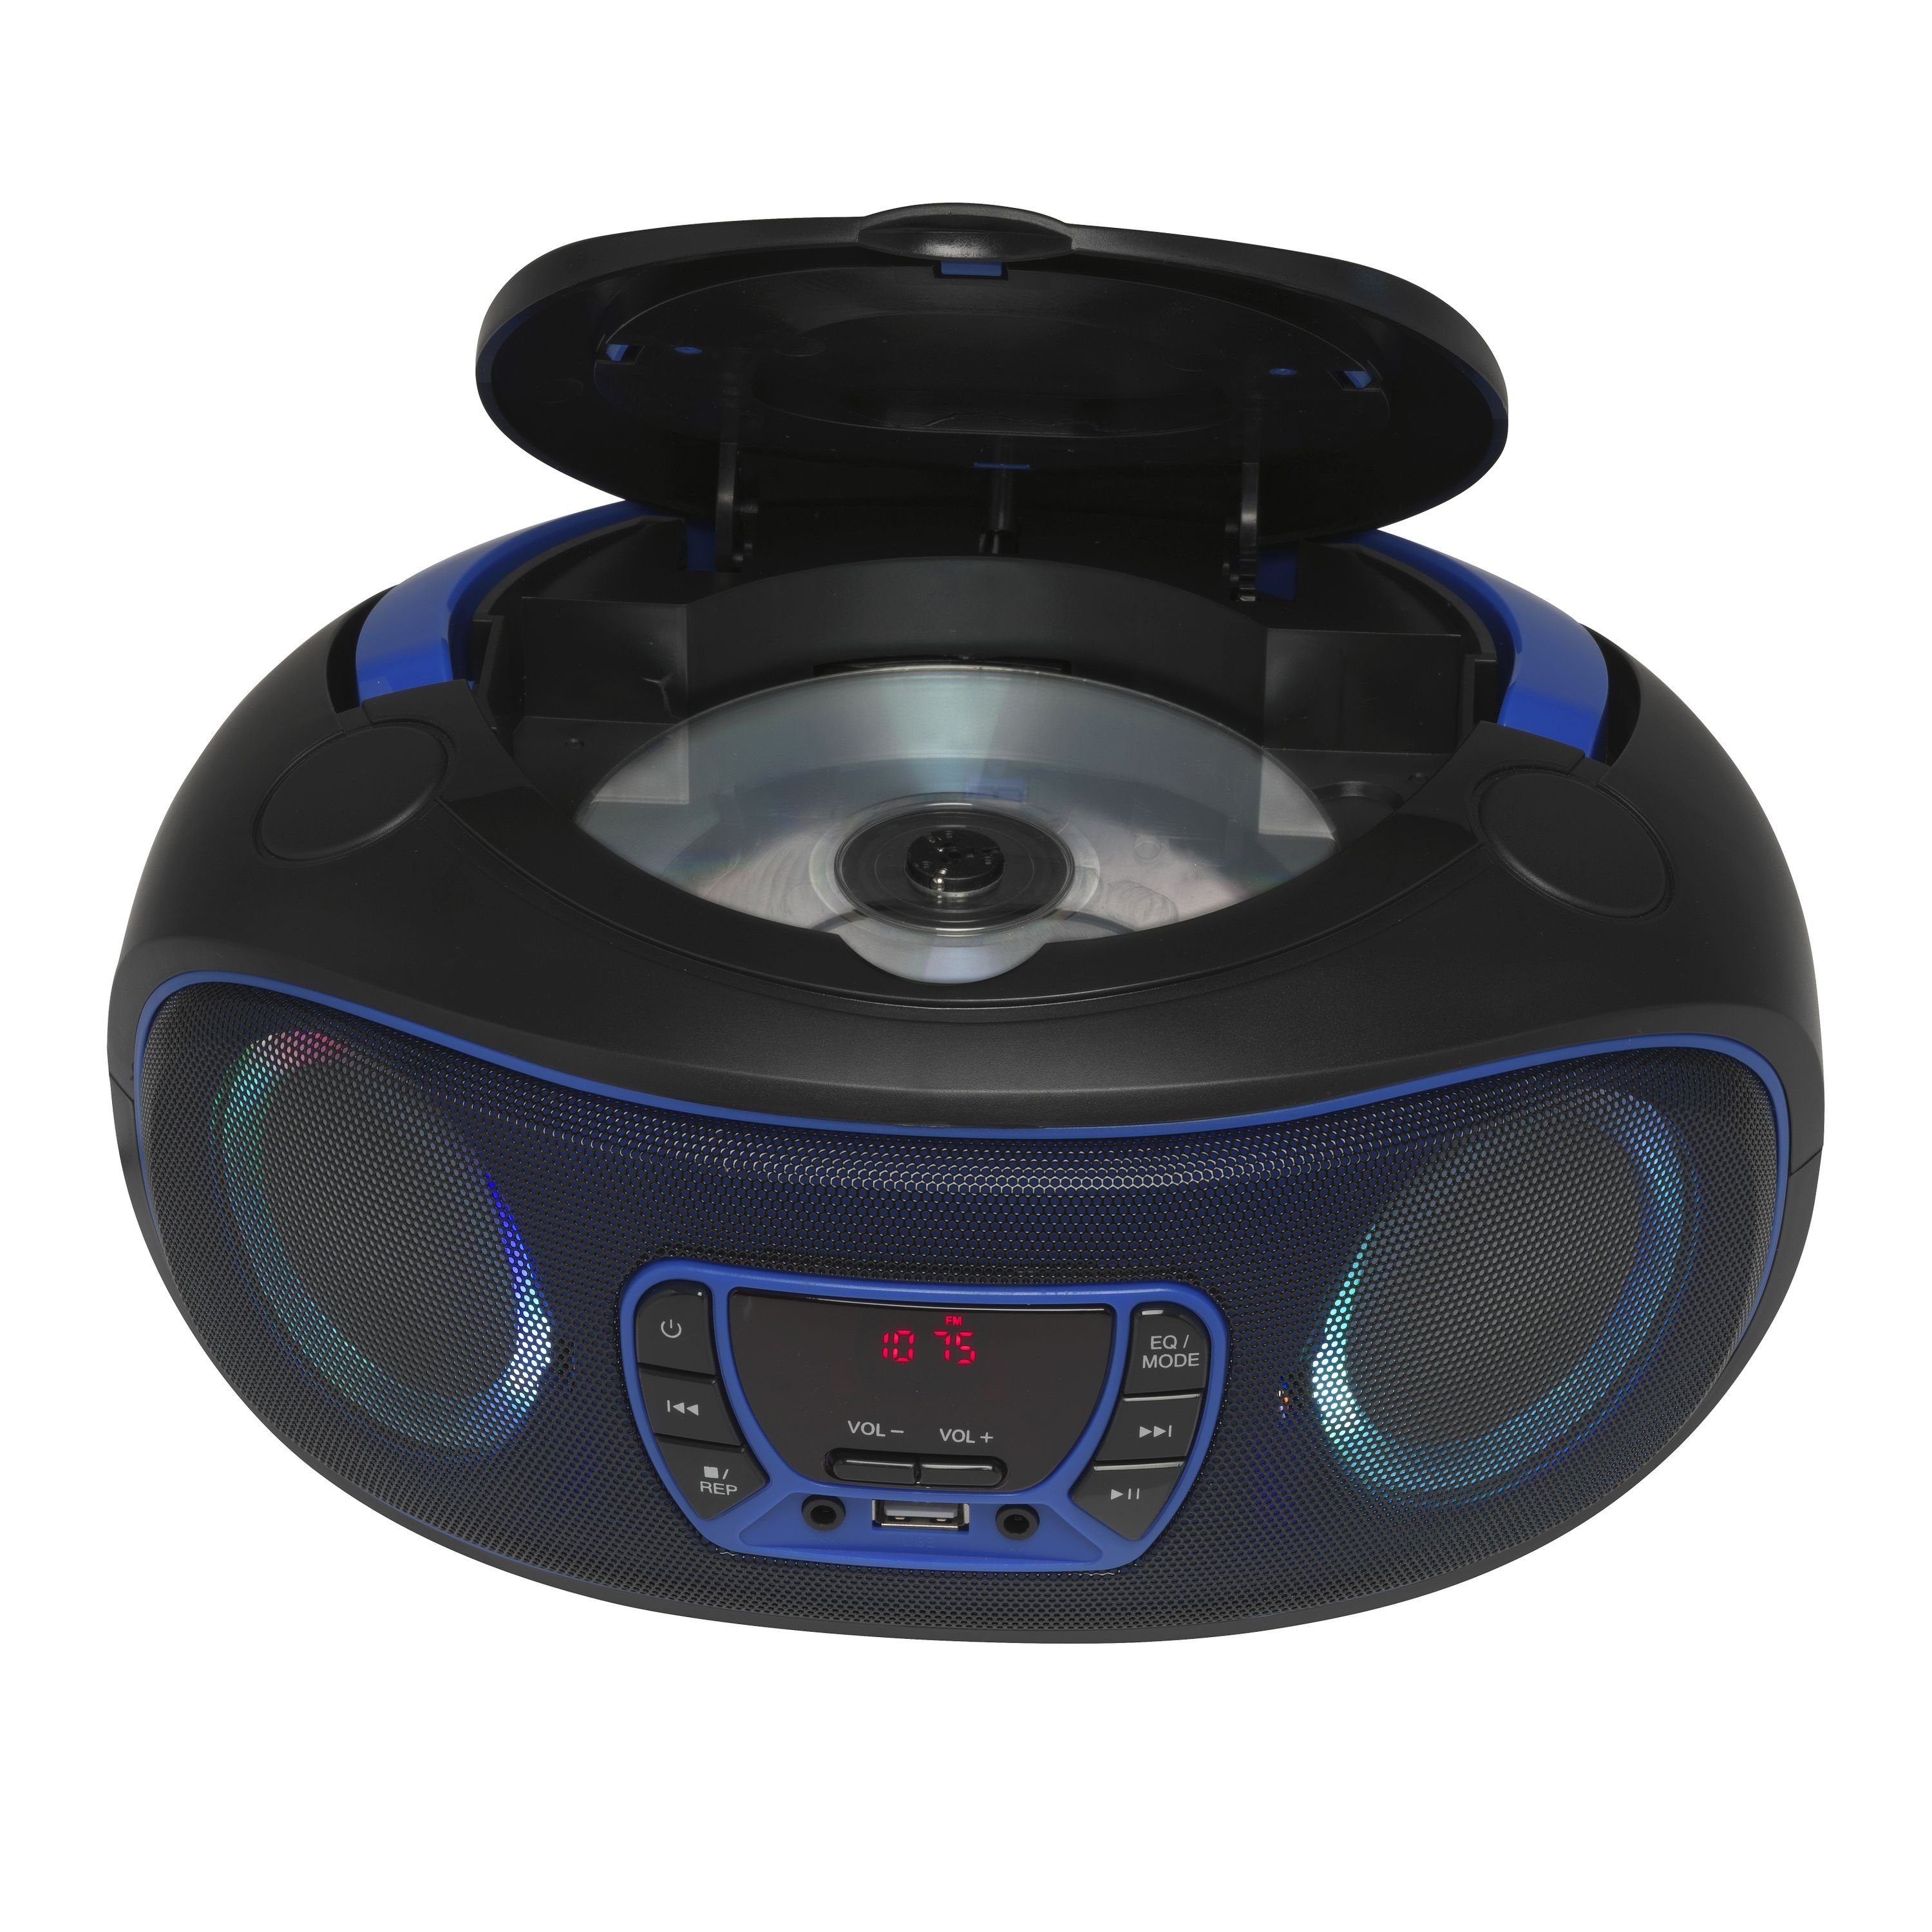 LED Blau TCL-212BT Kopfhörerausgang (Bluetooth, und AUX-IN, Denver USB, Partylicht) Boombox BLUE